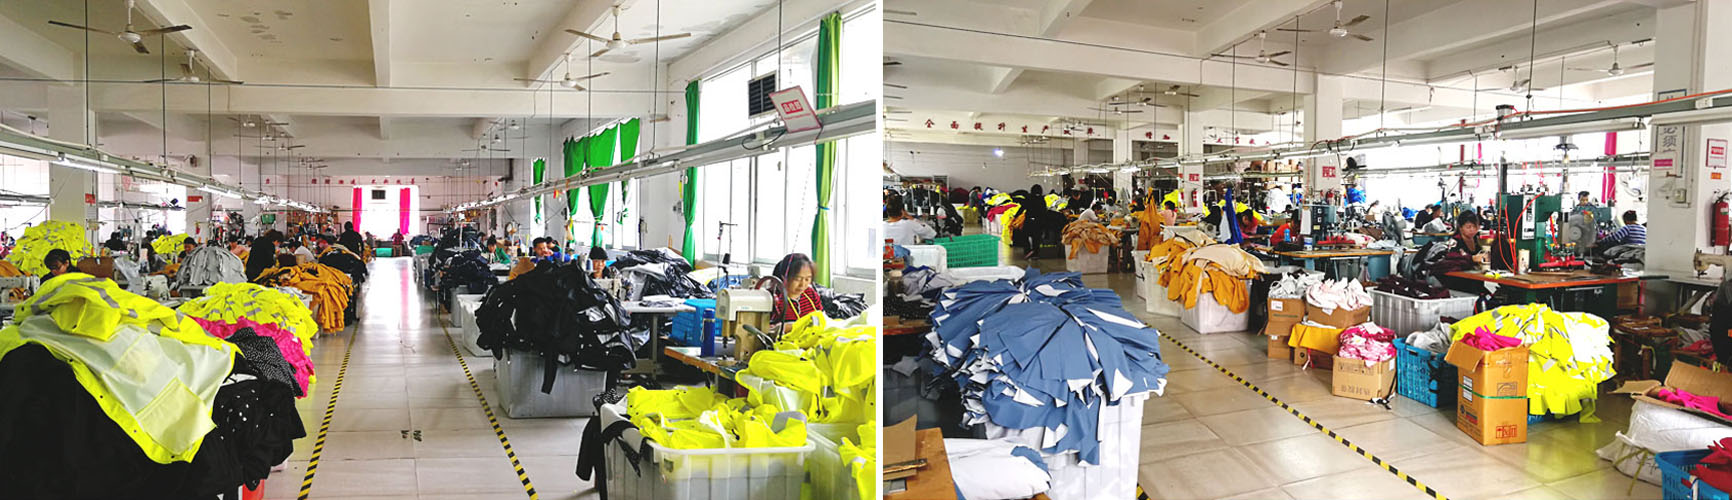 Xưởng sản xuất áo mưa tiện lợi tại Tphcm với 40 công nhân đang làm việc.